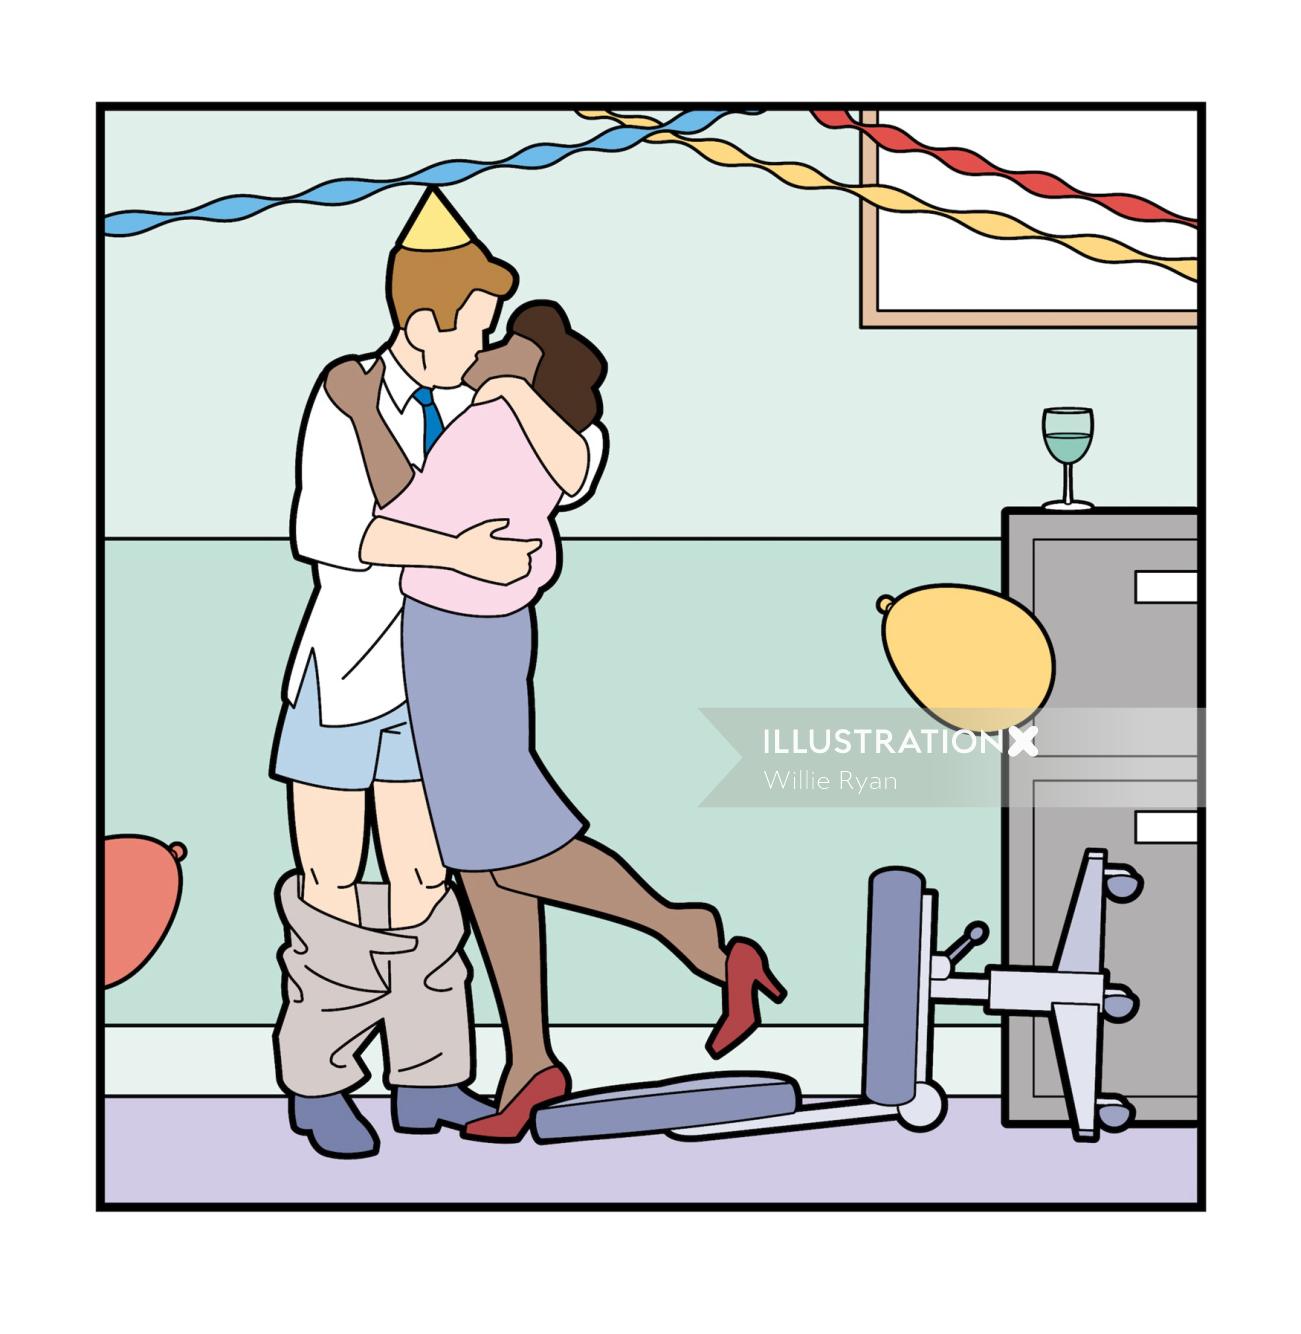 Party de bureau embrassant une illustration pour le magazine Research